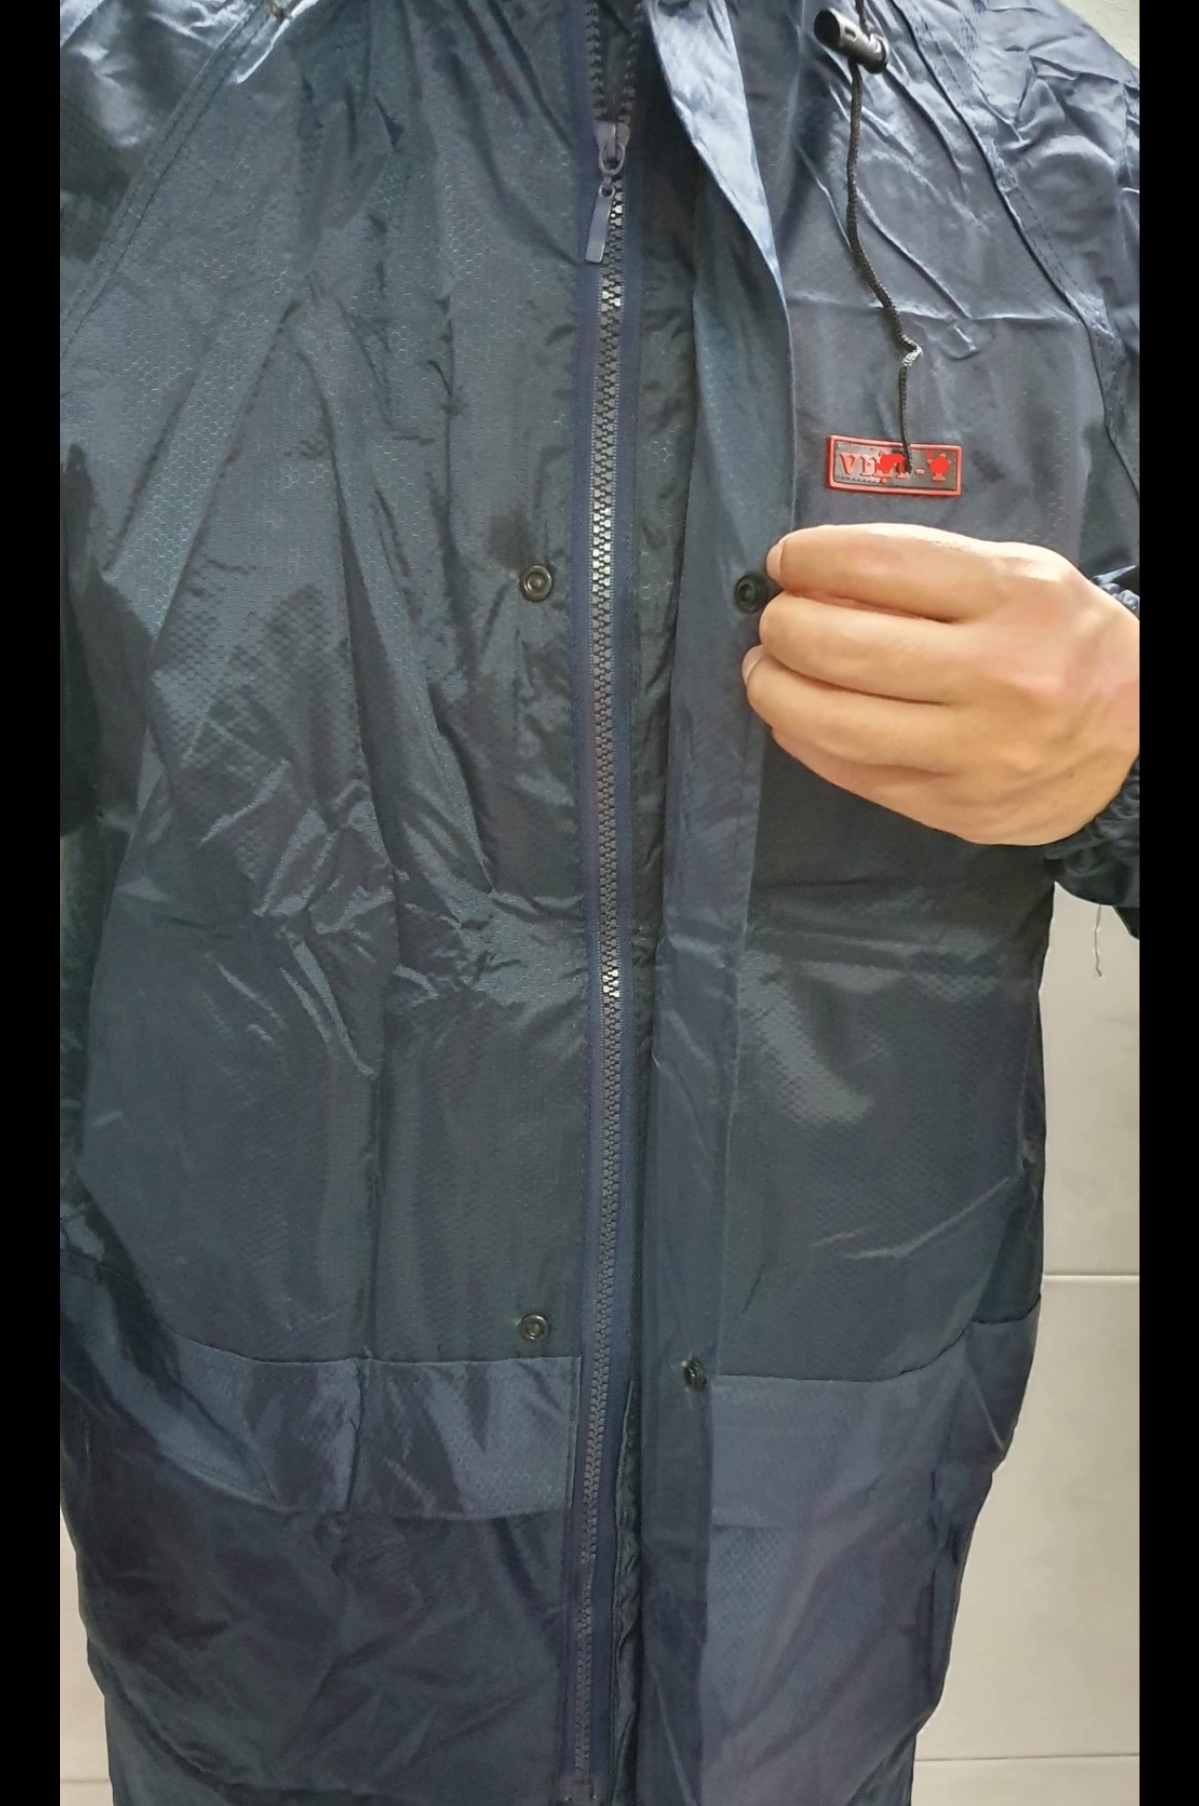 Hình ảnh Bộ quần áo mưa vải dù chống thấm 2 khóa cao cấp.